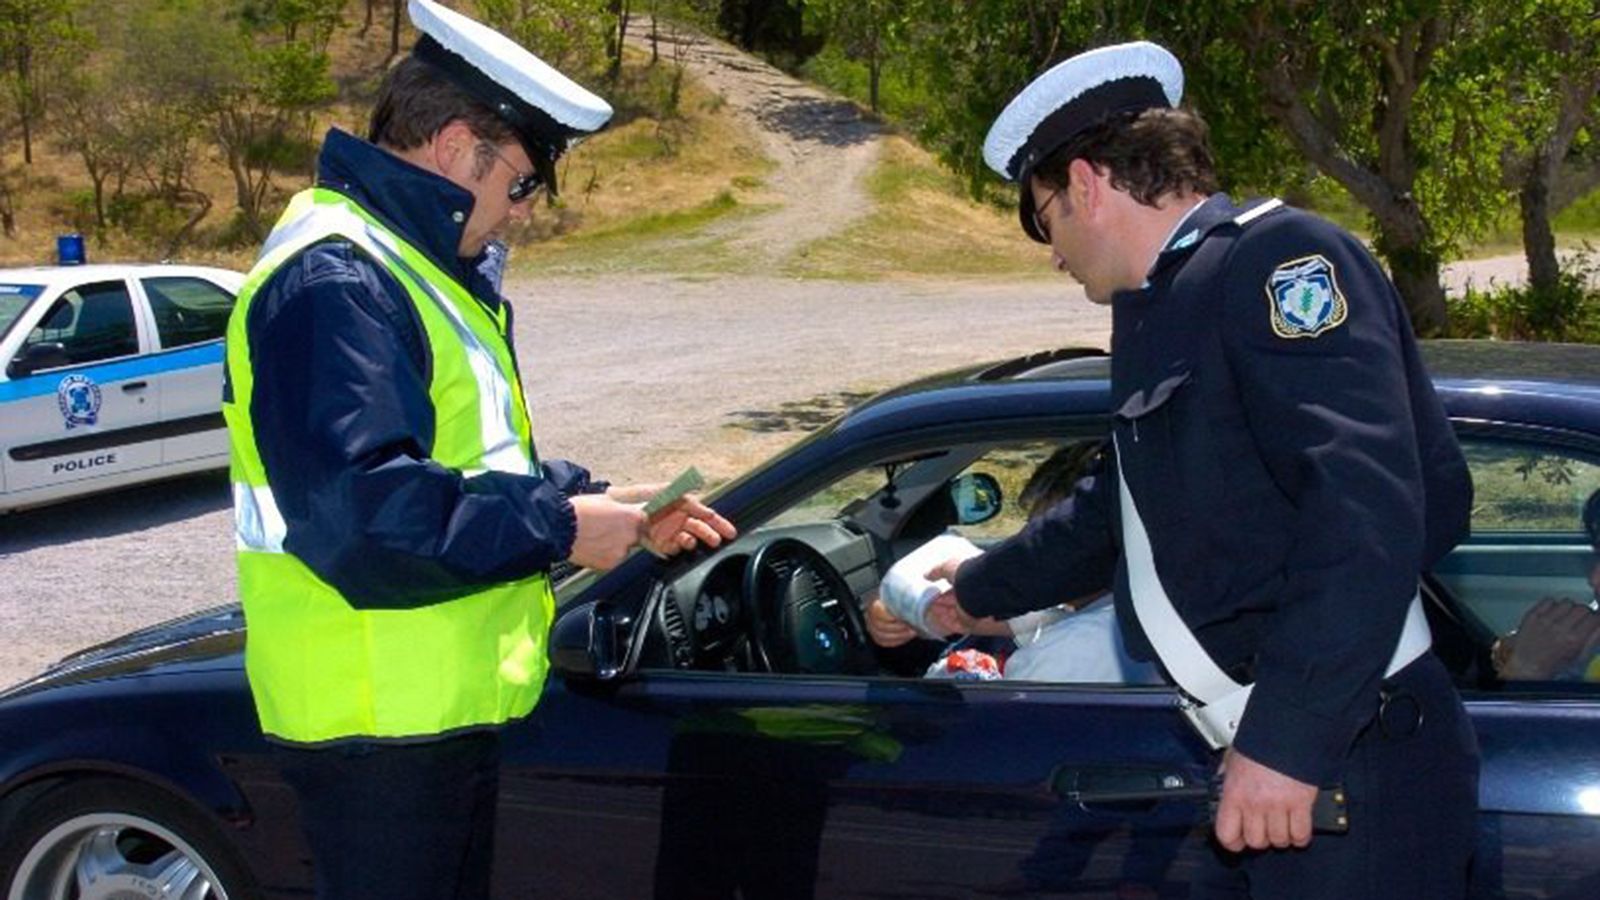 Τροχαία: 270 παραβάσεις για οδήγηση υπό την επήρεια αλκοόλ το τριήμερο